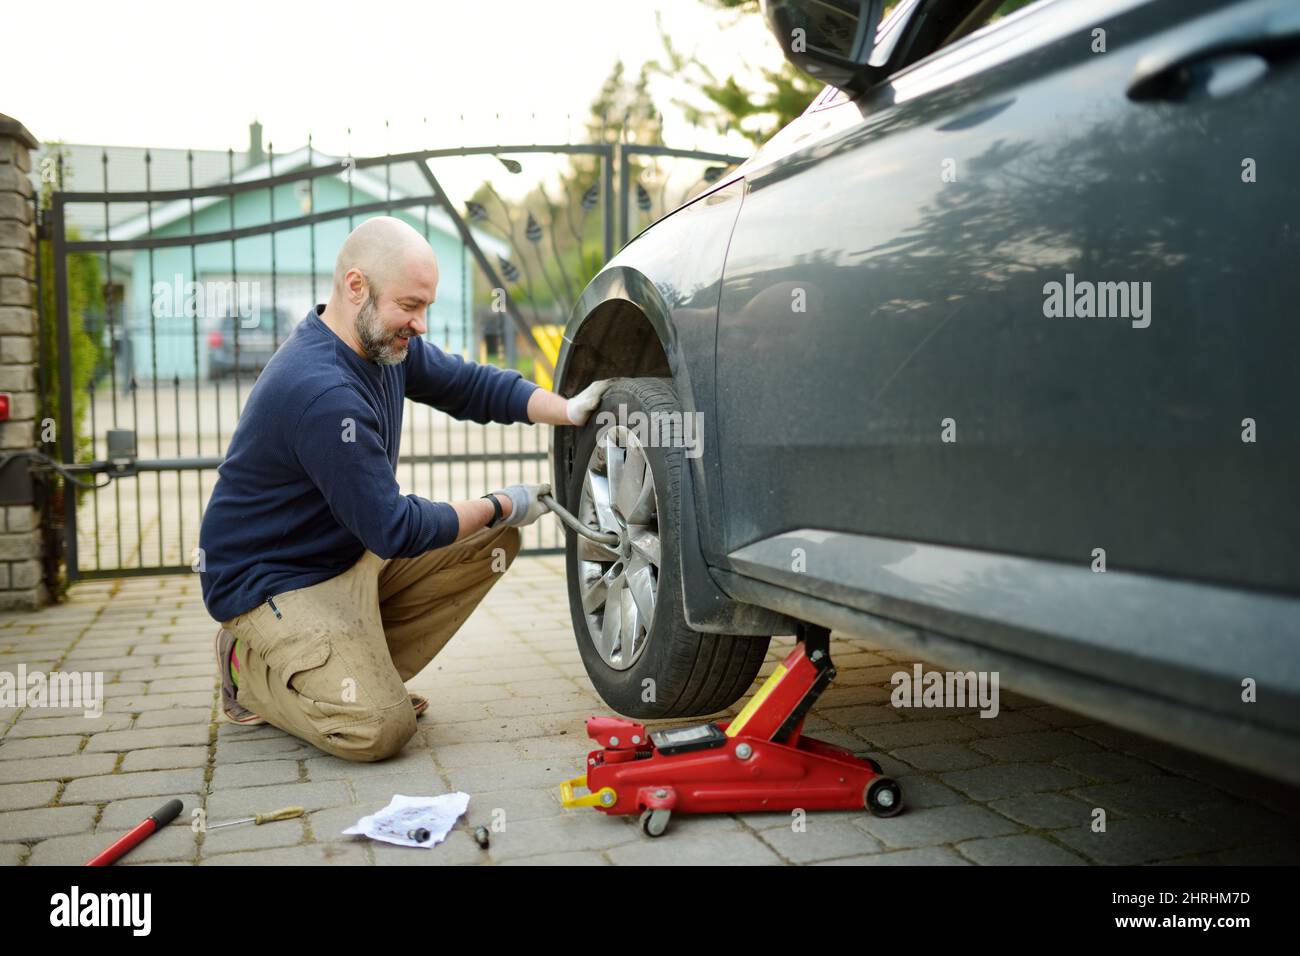 Junger Mann, der die Reifenpanne seines Autos wechselt. Vor dem Aufbocken des Fahrzeugs die Muttern mit einem Radschlüssel lösen. Stockfoto